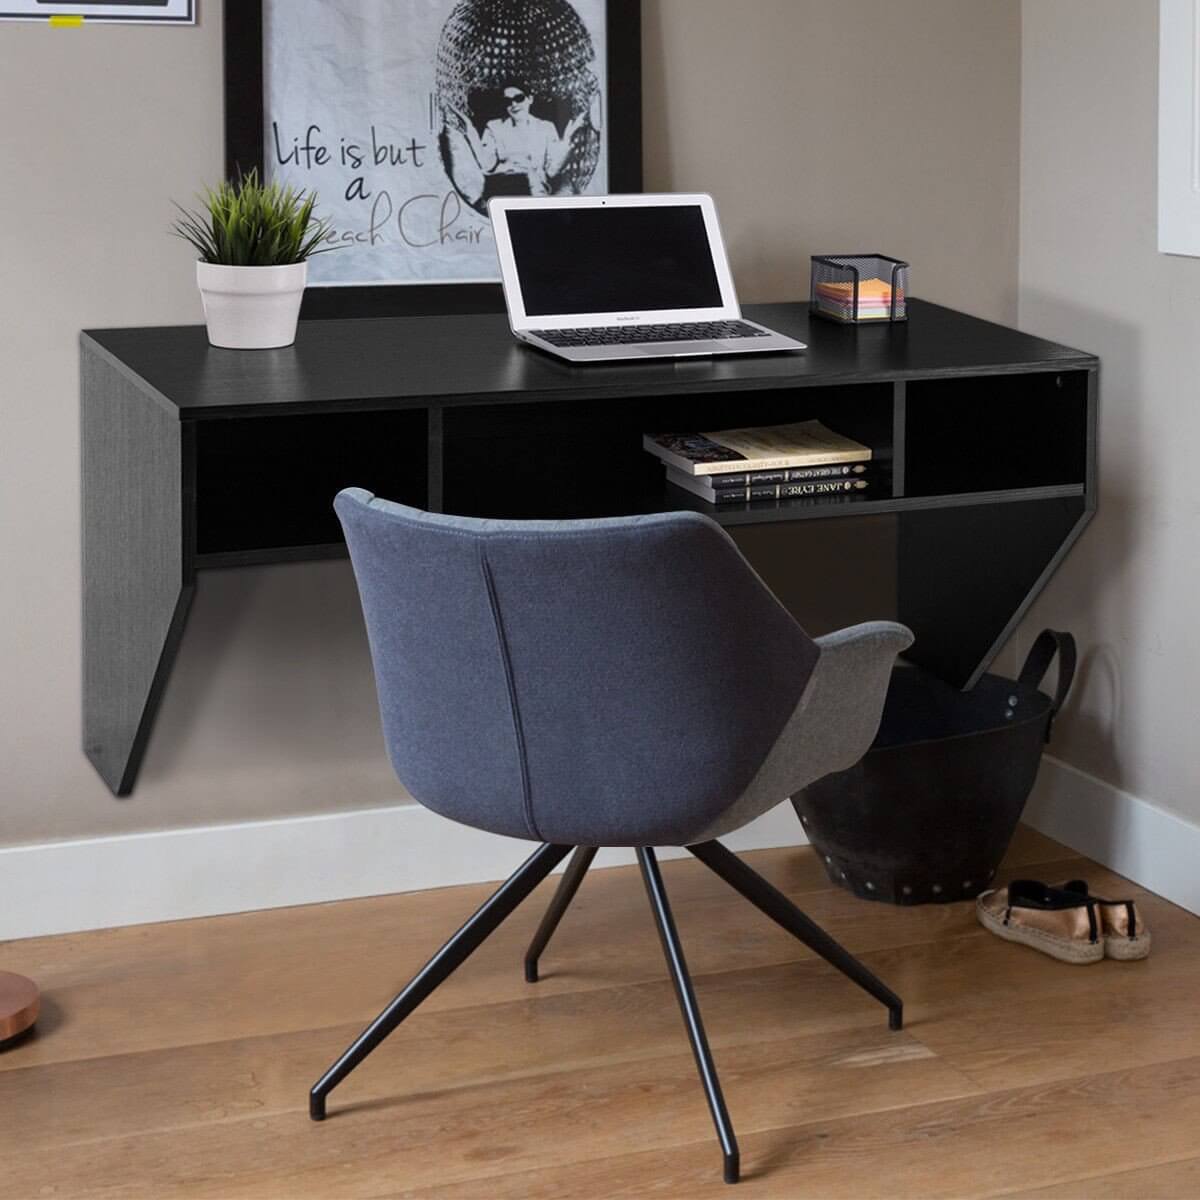 Black Simple Home Office Desk Idea